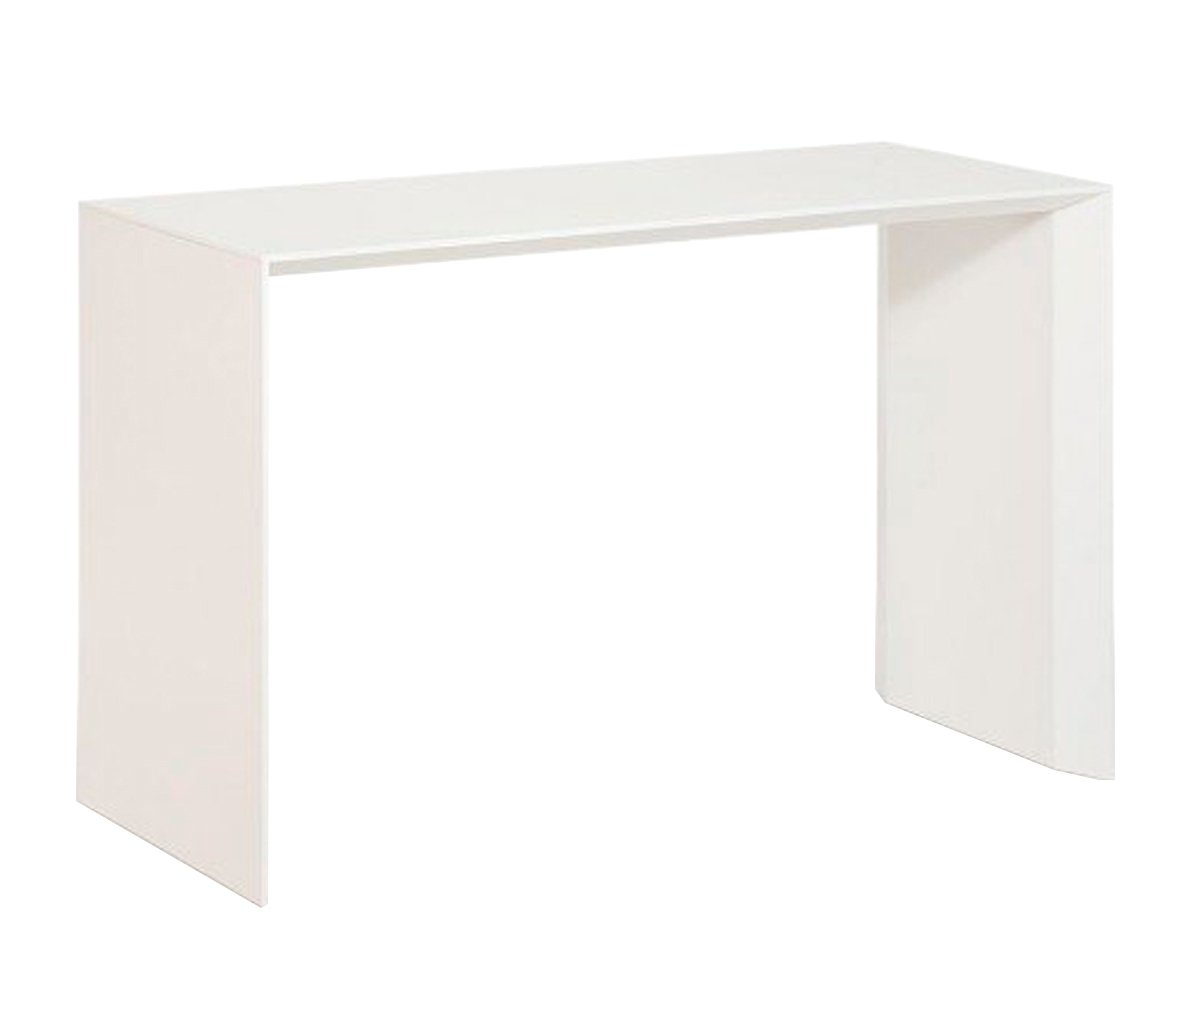 Muurame Slimmi-työpöytä valkoinen, L 117 cm